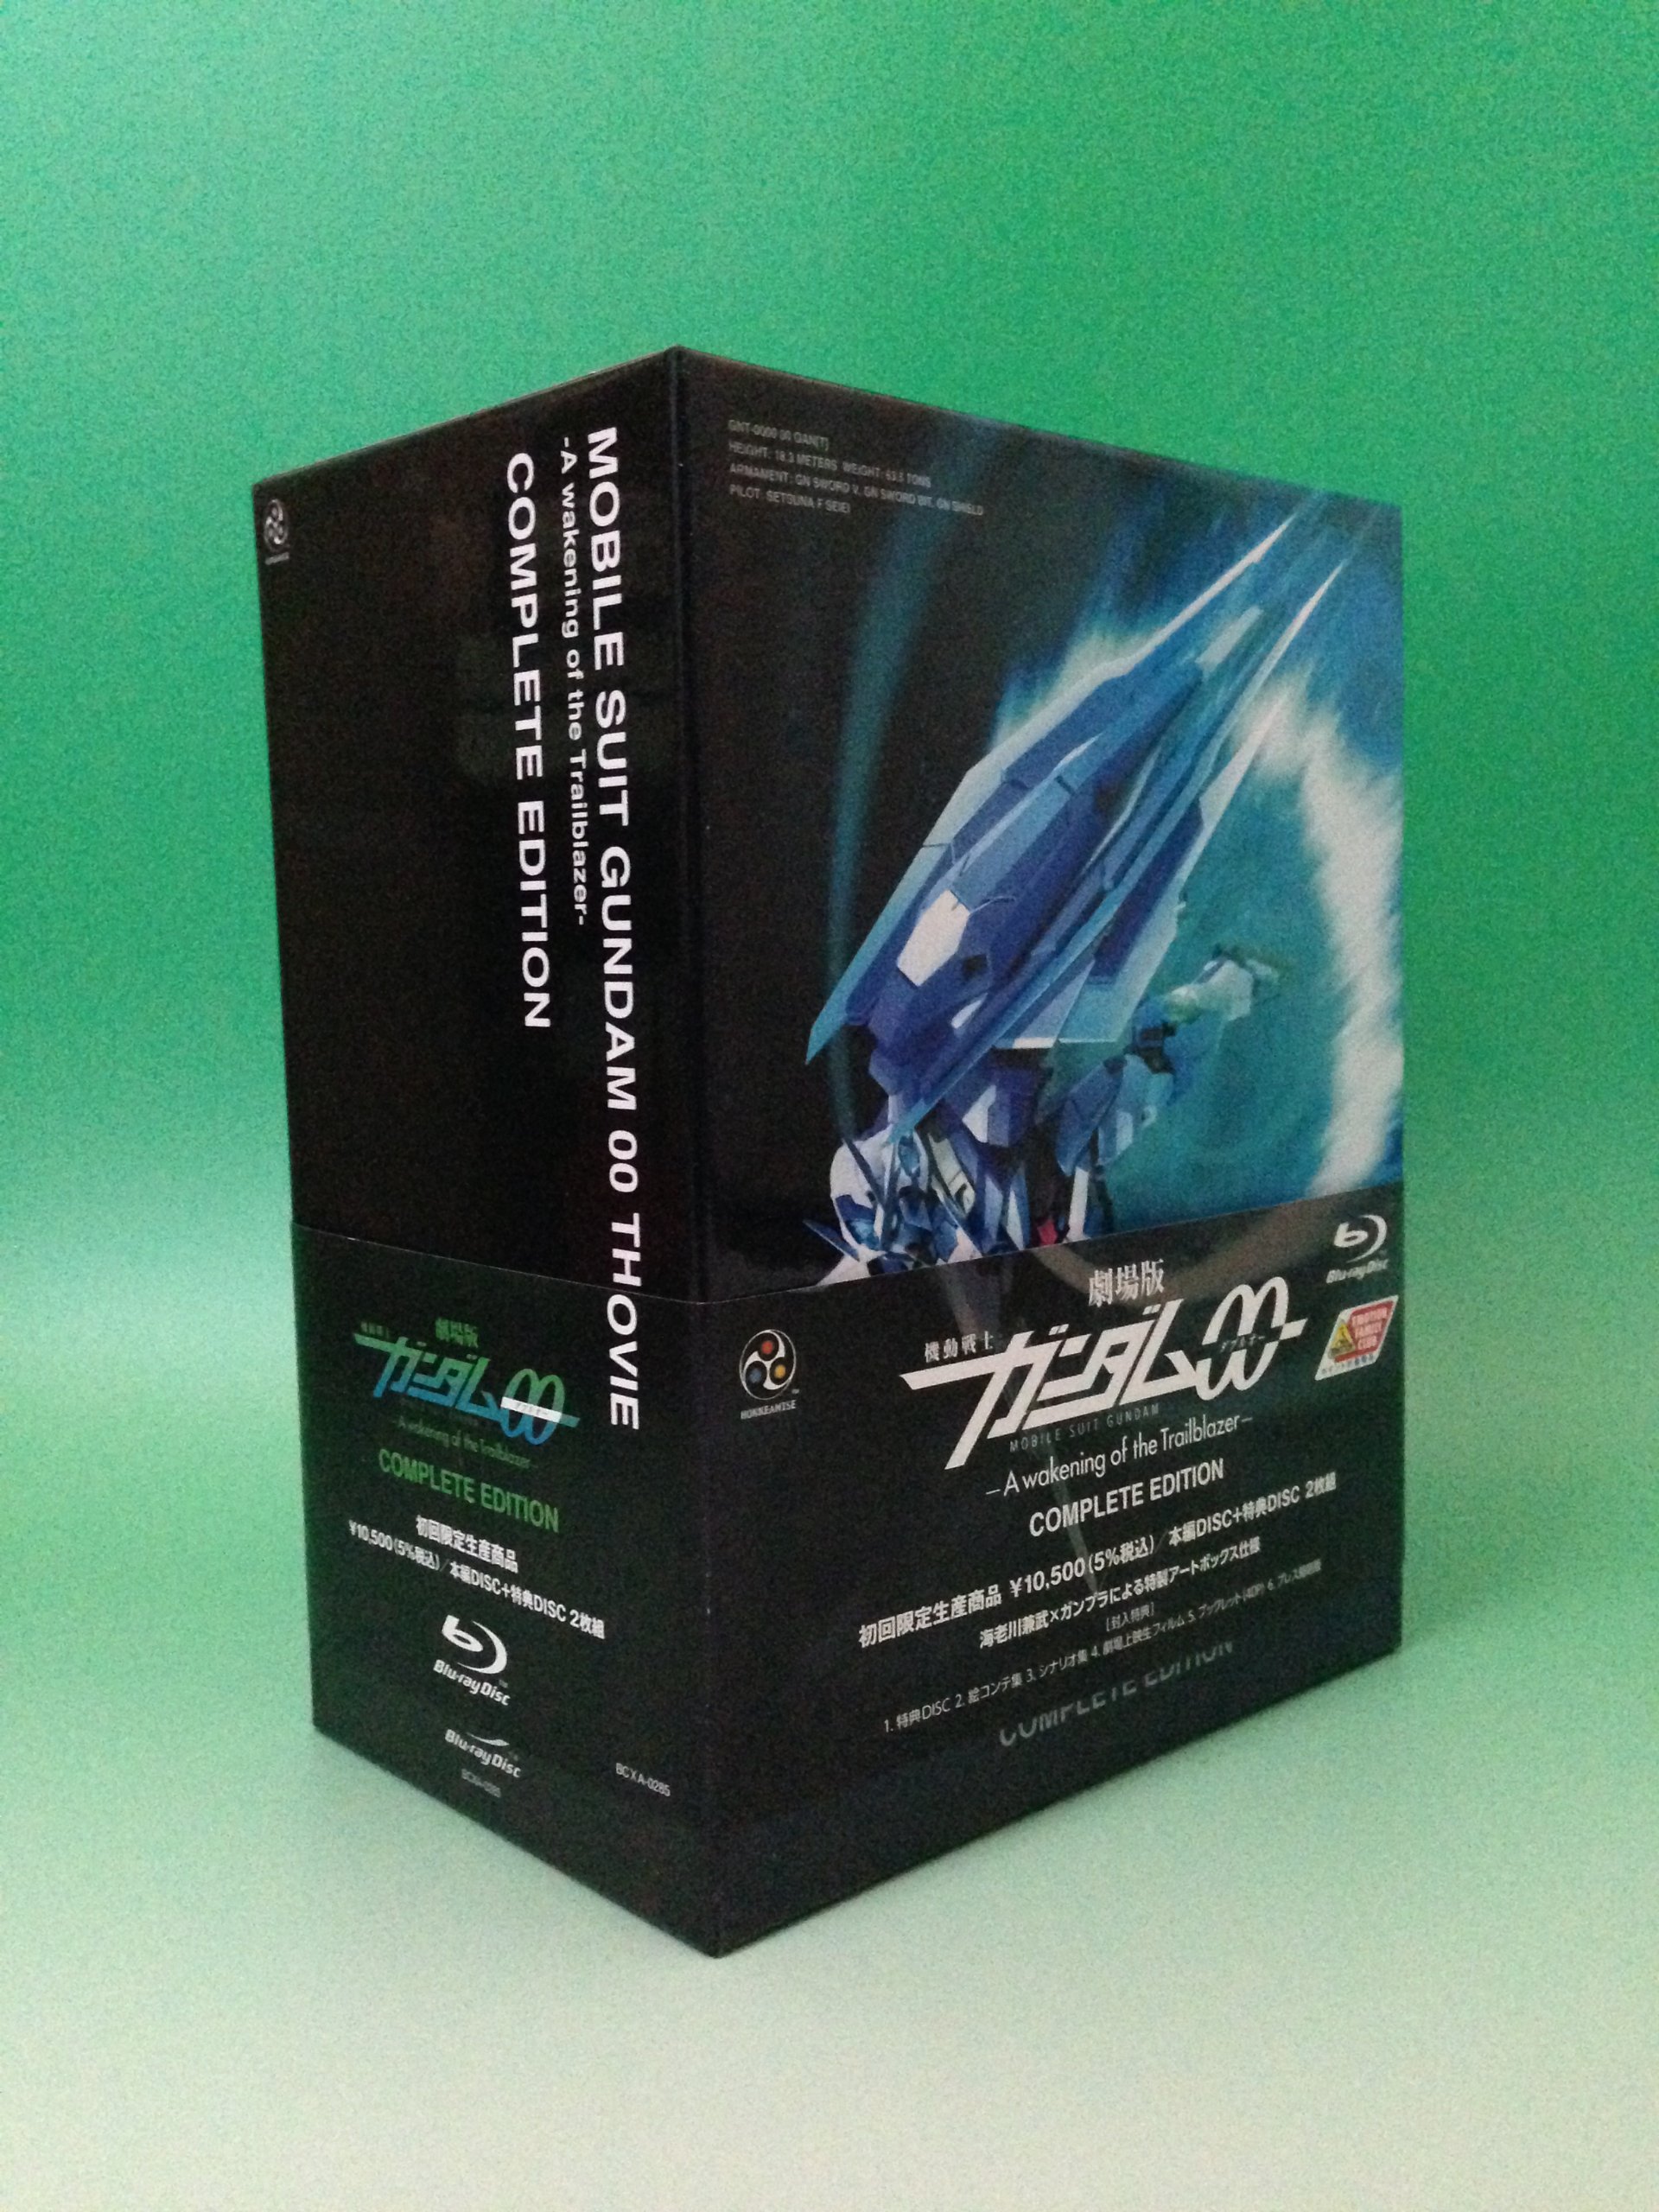 劇場版 機動戦士ガンダムOO —A wakening of the Trailblazer— COMPLETE EDITION初回限定生産 [Blu-ray]